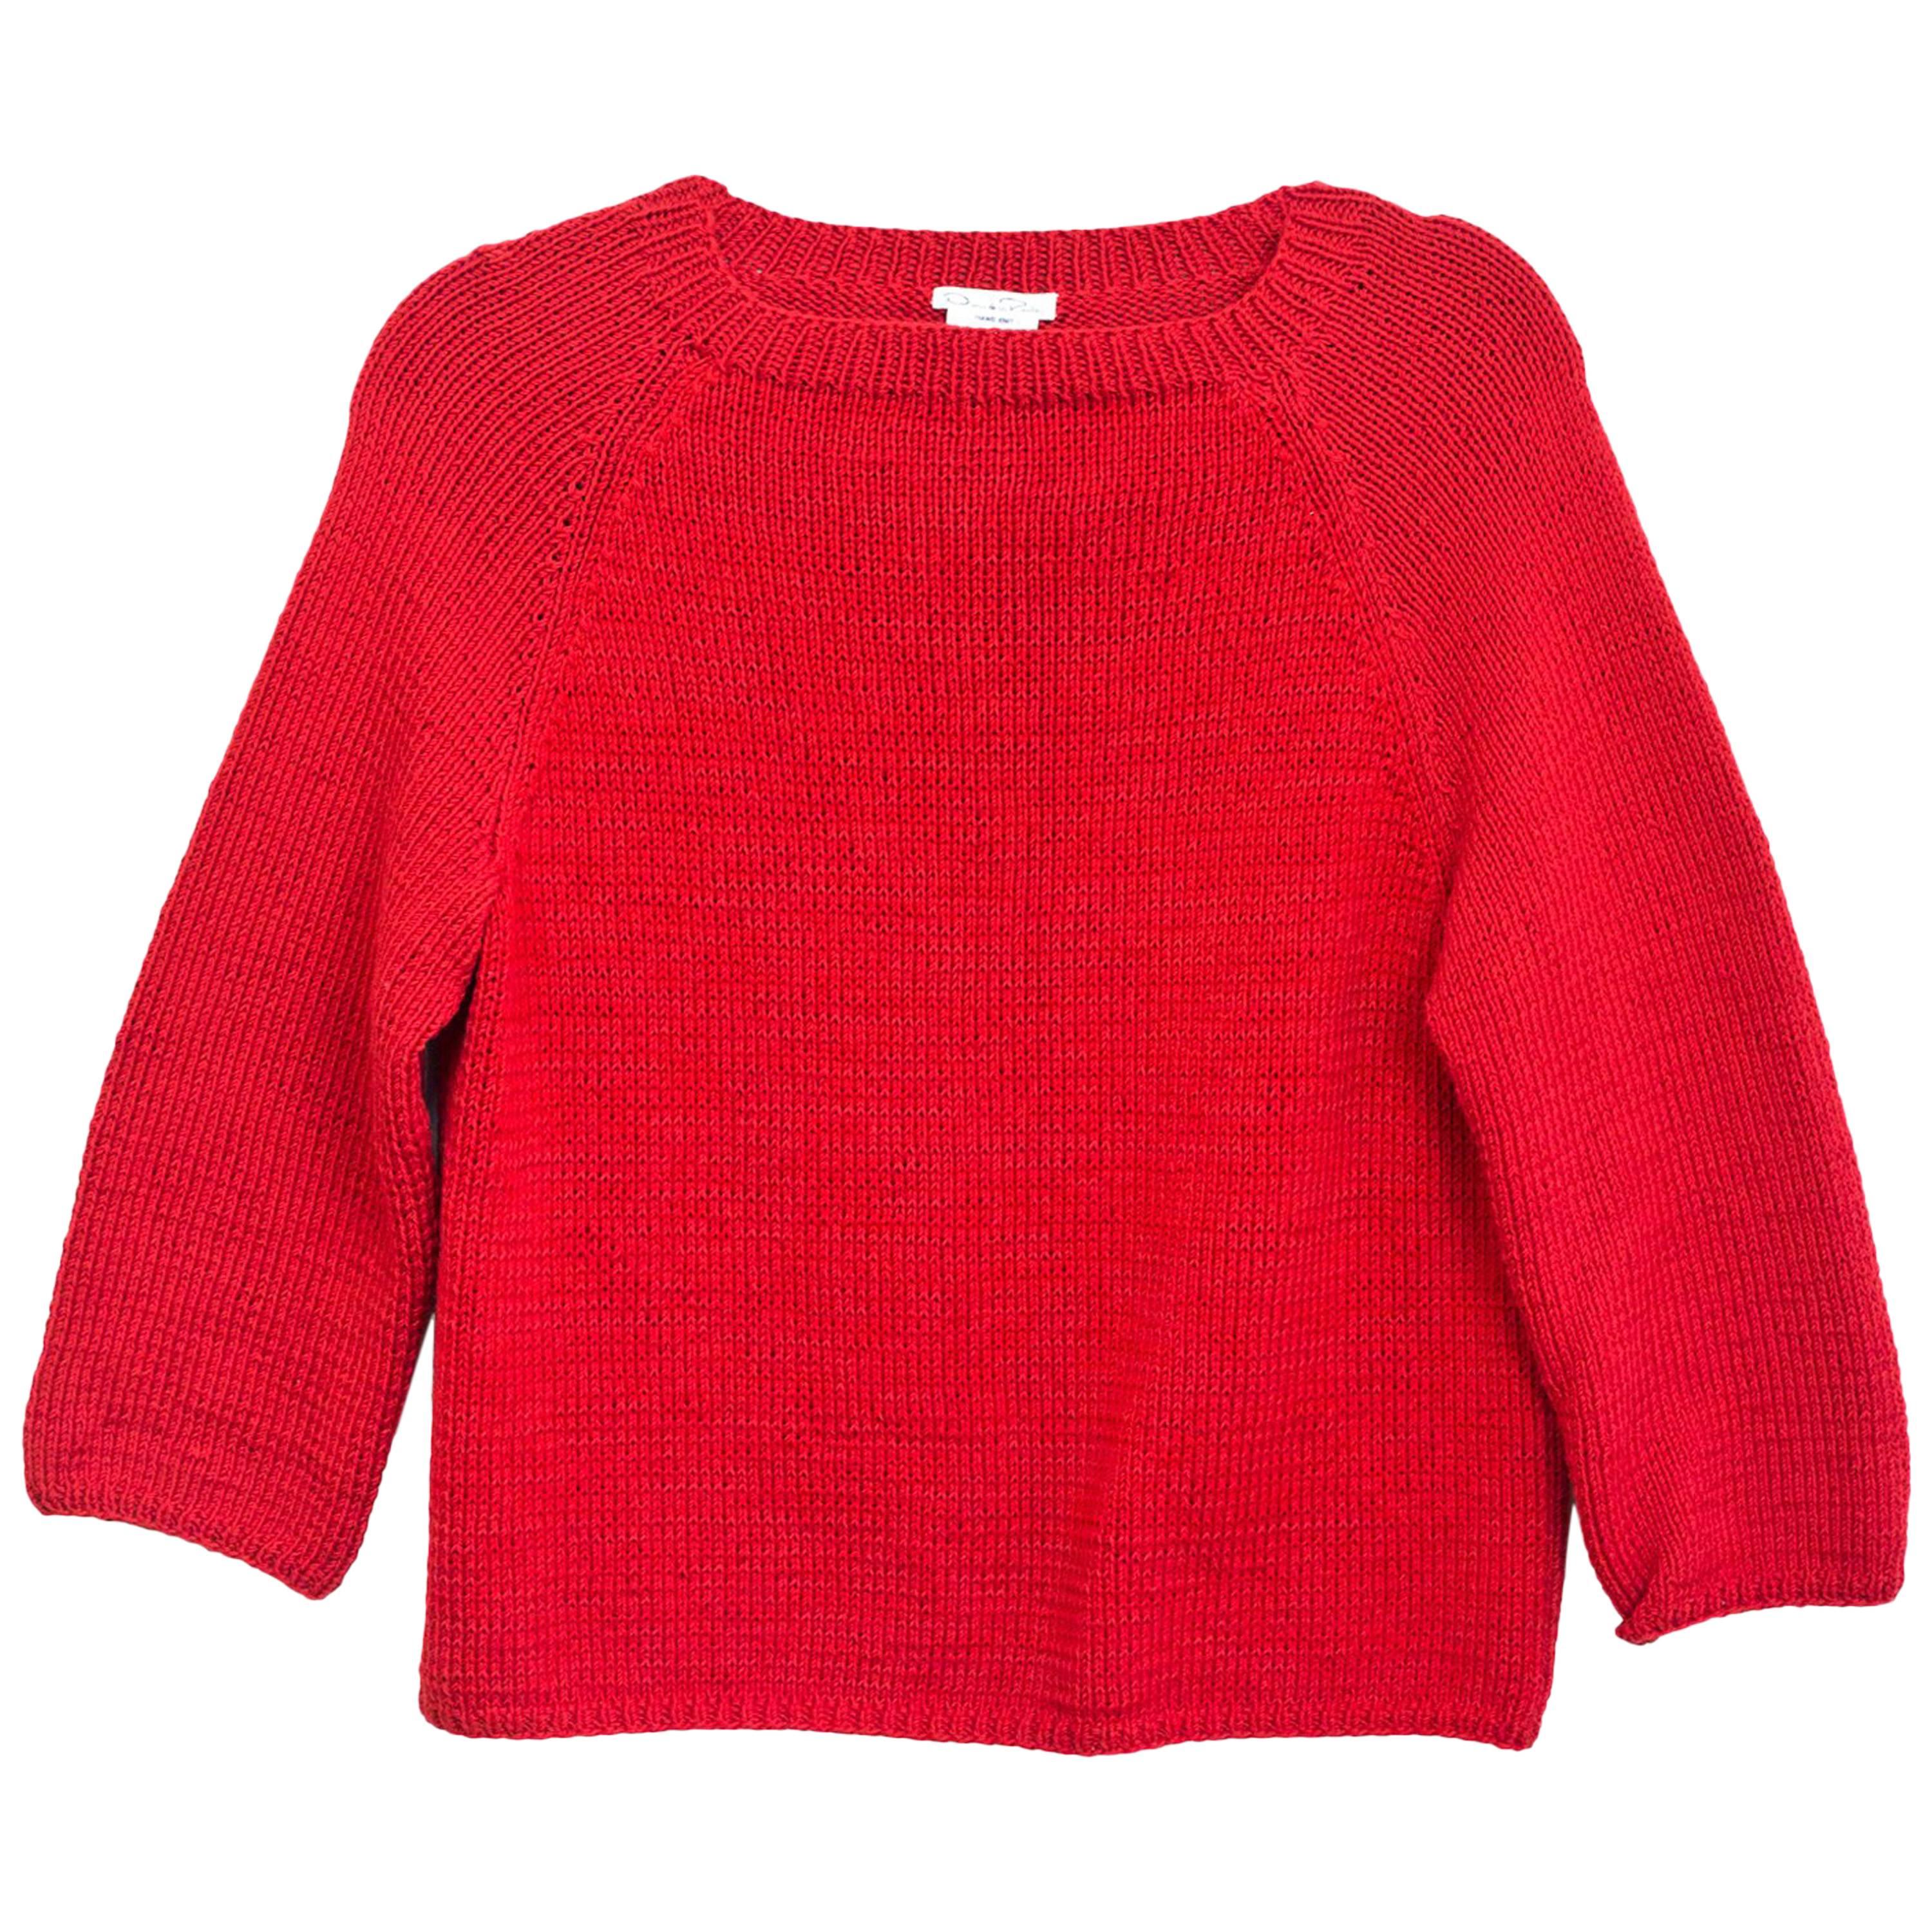 Oscar De La Renta Red Longsleeve Sweater Sz Small